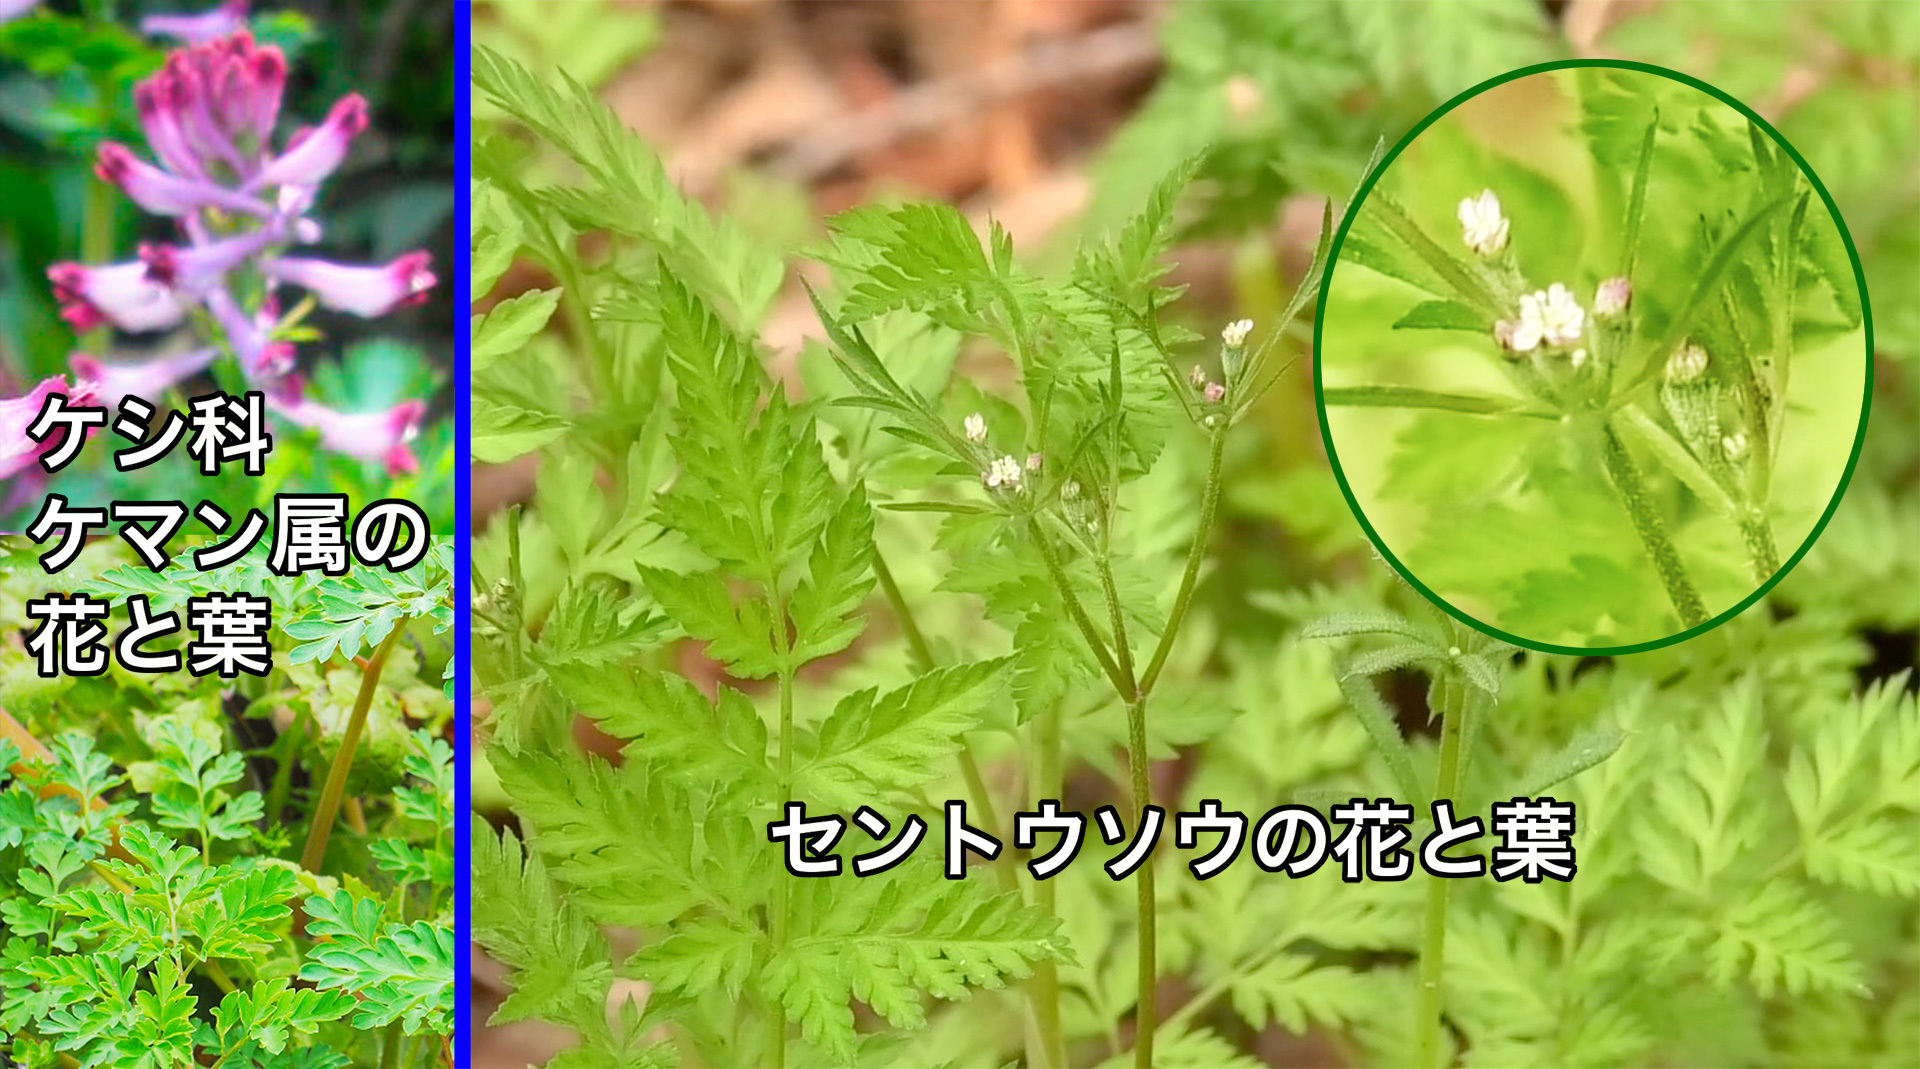 セントウソウの葉はケシ科ケマン属の植物の葉とよく似ているが花の形は全然違う